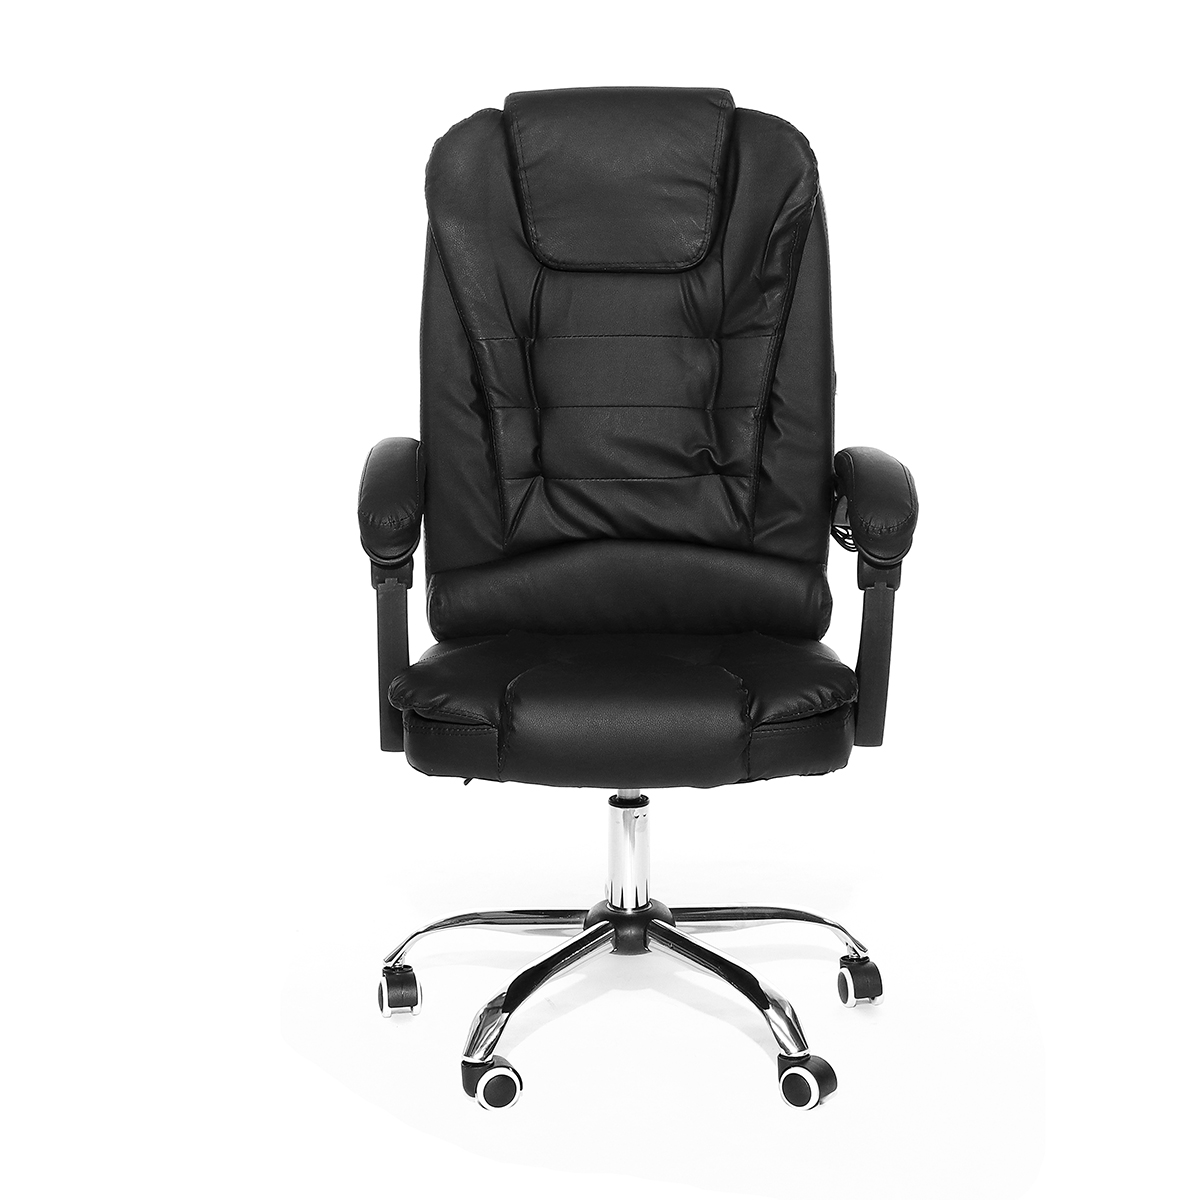 

Эргономичный офисный стул Racing Gaming Chair High-Back ПУ кожаный ноутбук стол стул с подставкой для ног для домашнего офиса